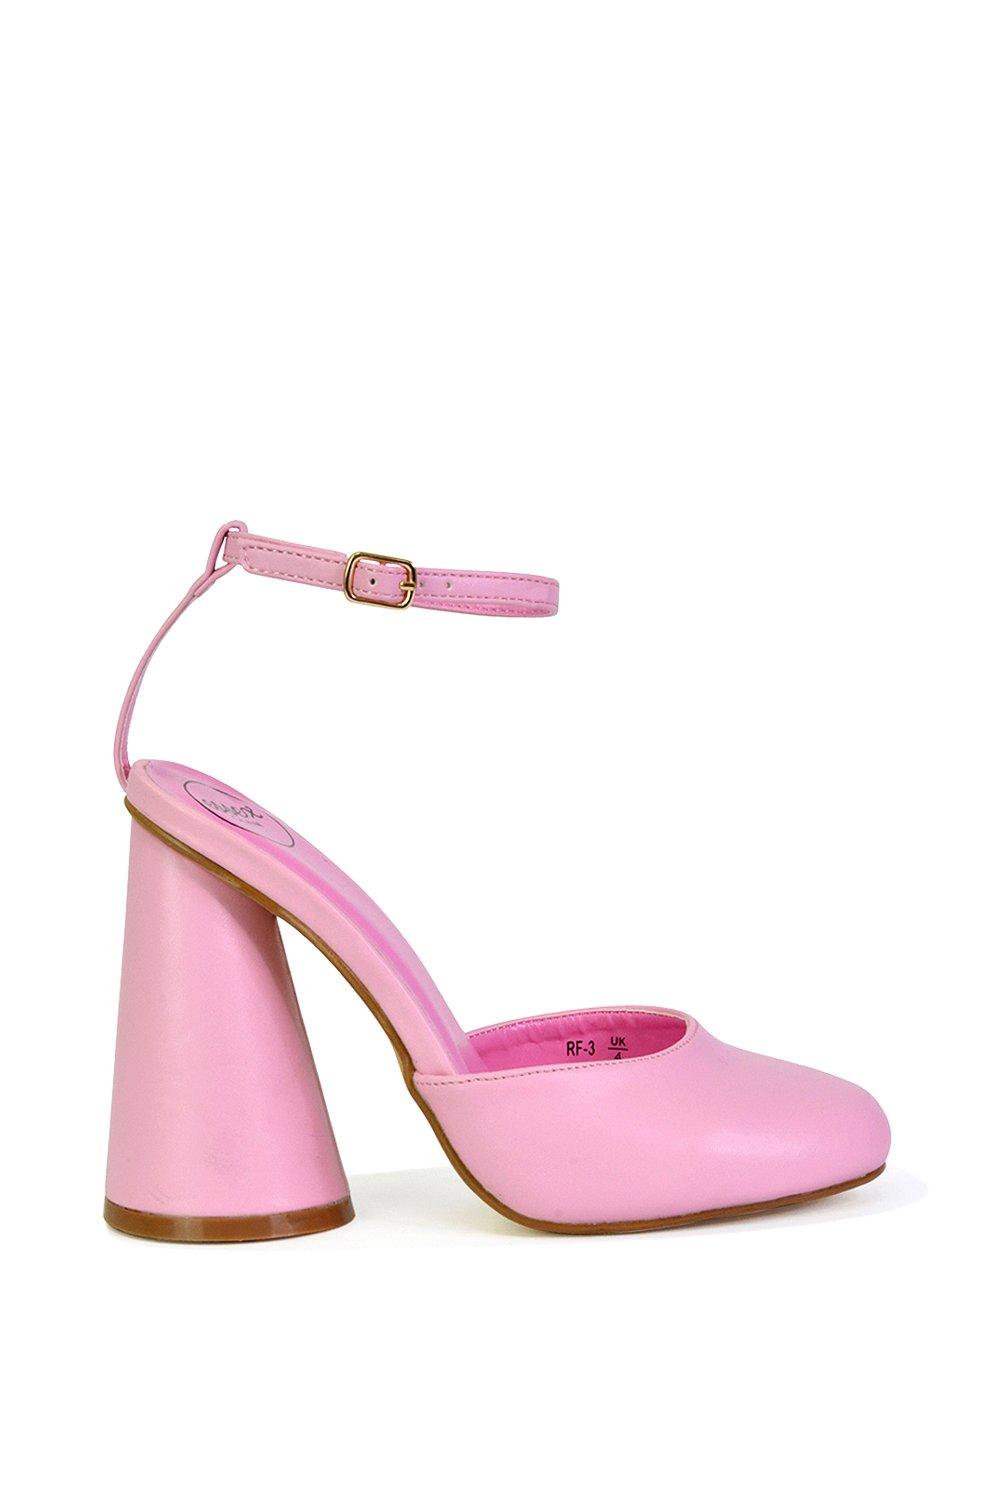 Эффектный каблук с блоком цилиндров и ремешком на щиколотке Ekin XY London, розовый туфли на каблуках rosalia mule frye камень